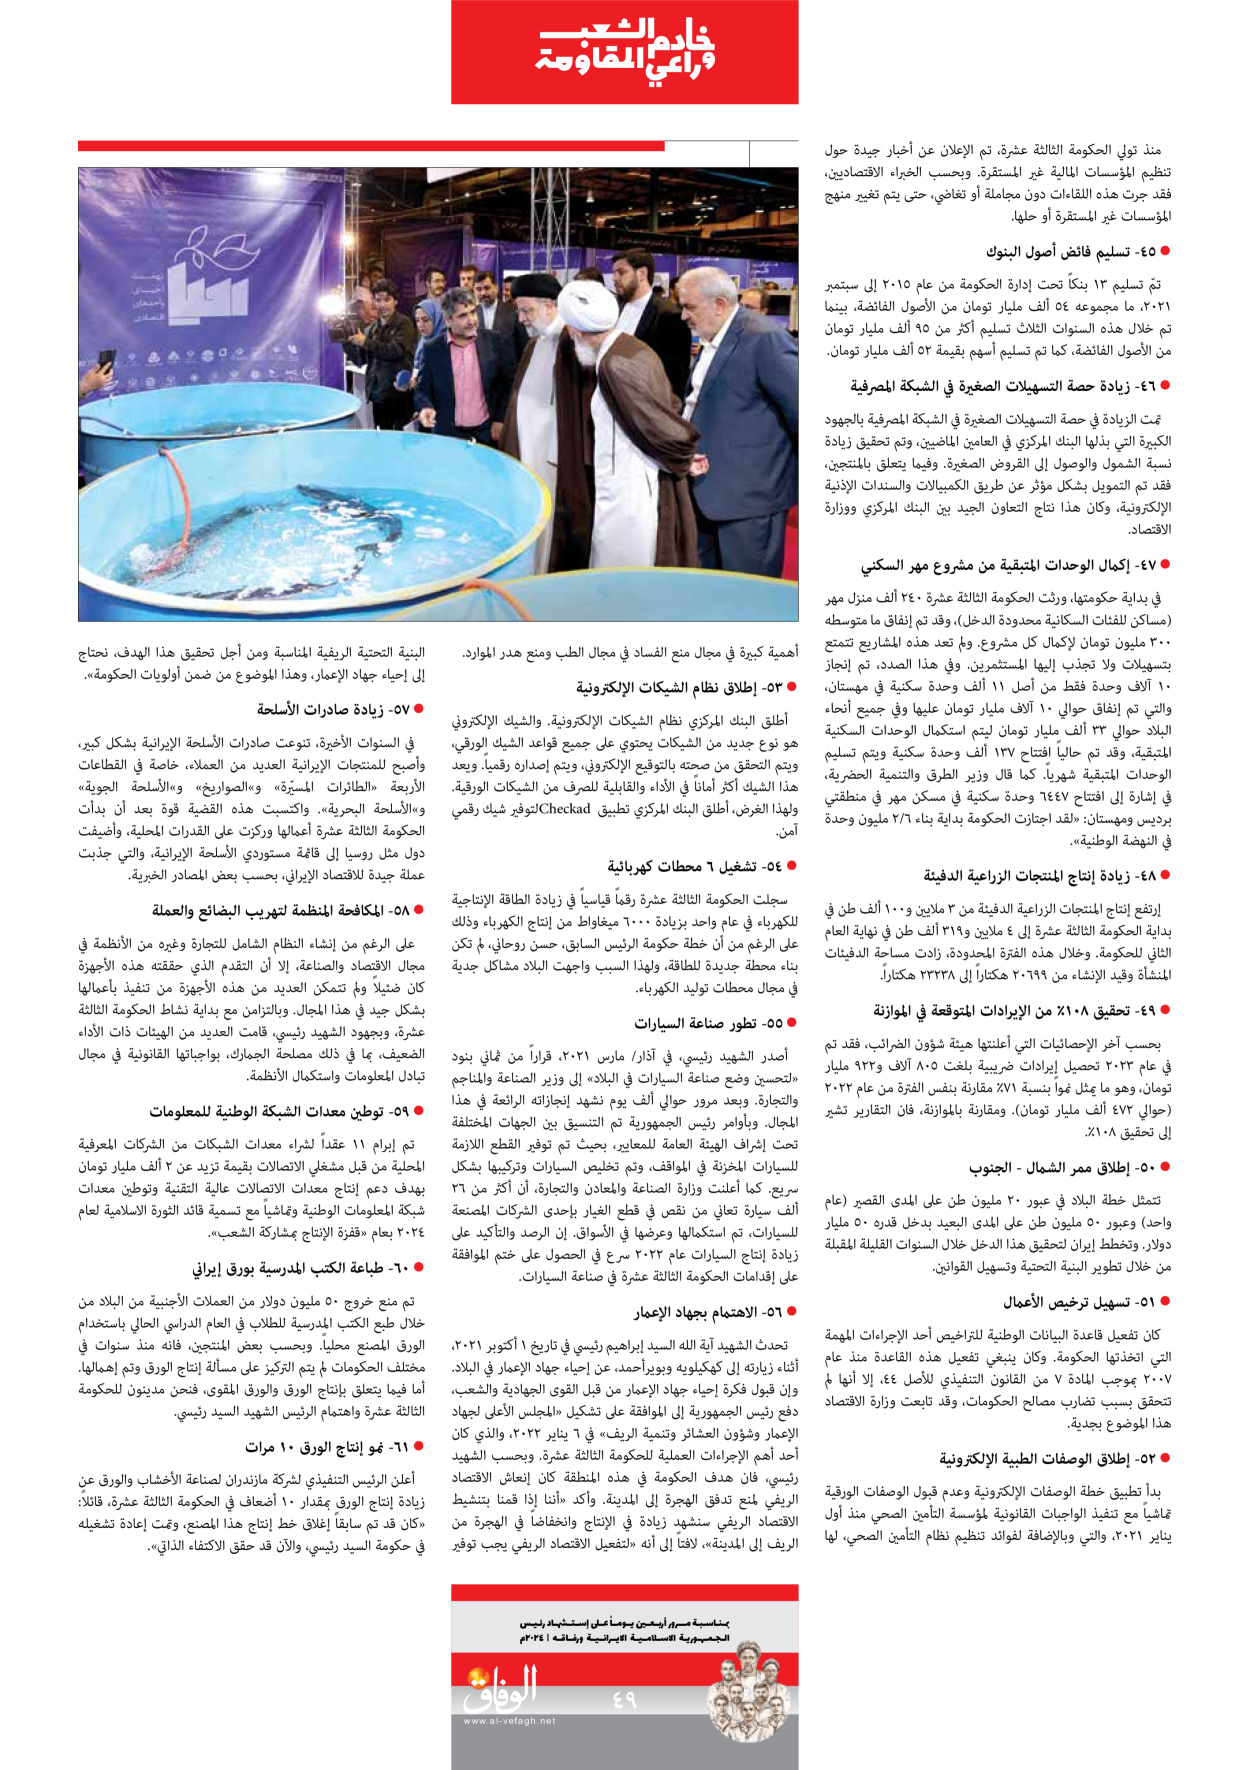 صحیفة ایران الدولیة الوفاق - ملحق ویژه نامه چهلم شهید رییسی - ٢٩ يونيو ٢٠٢٤ - الصفحة ٤۹